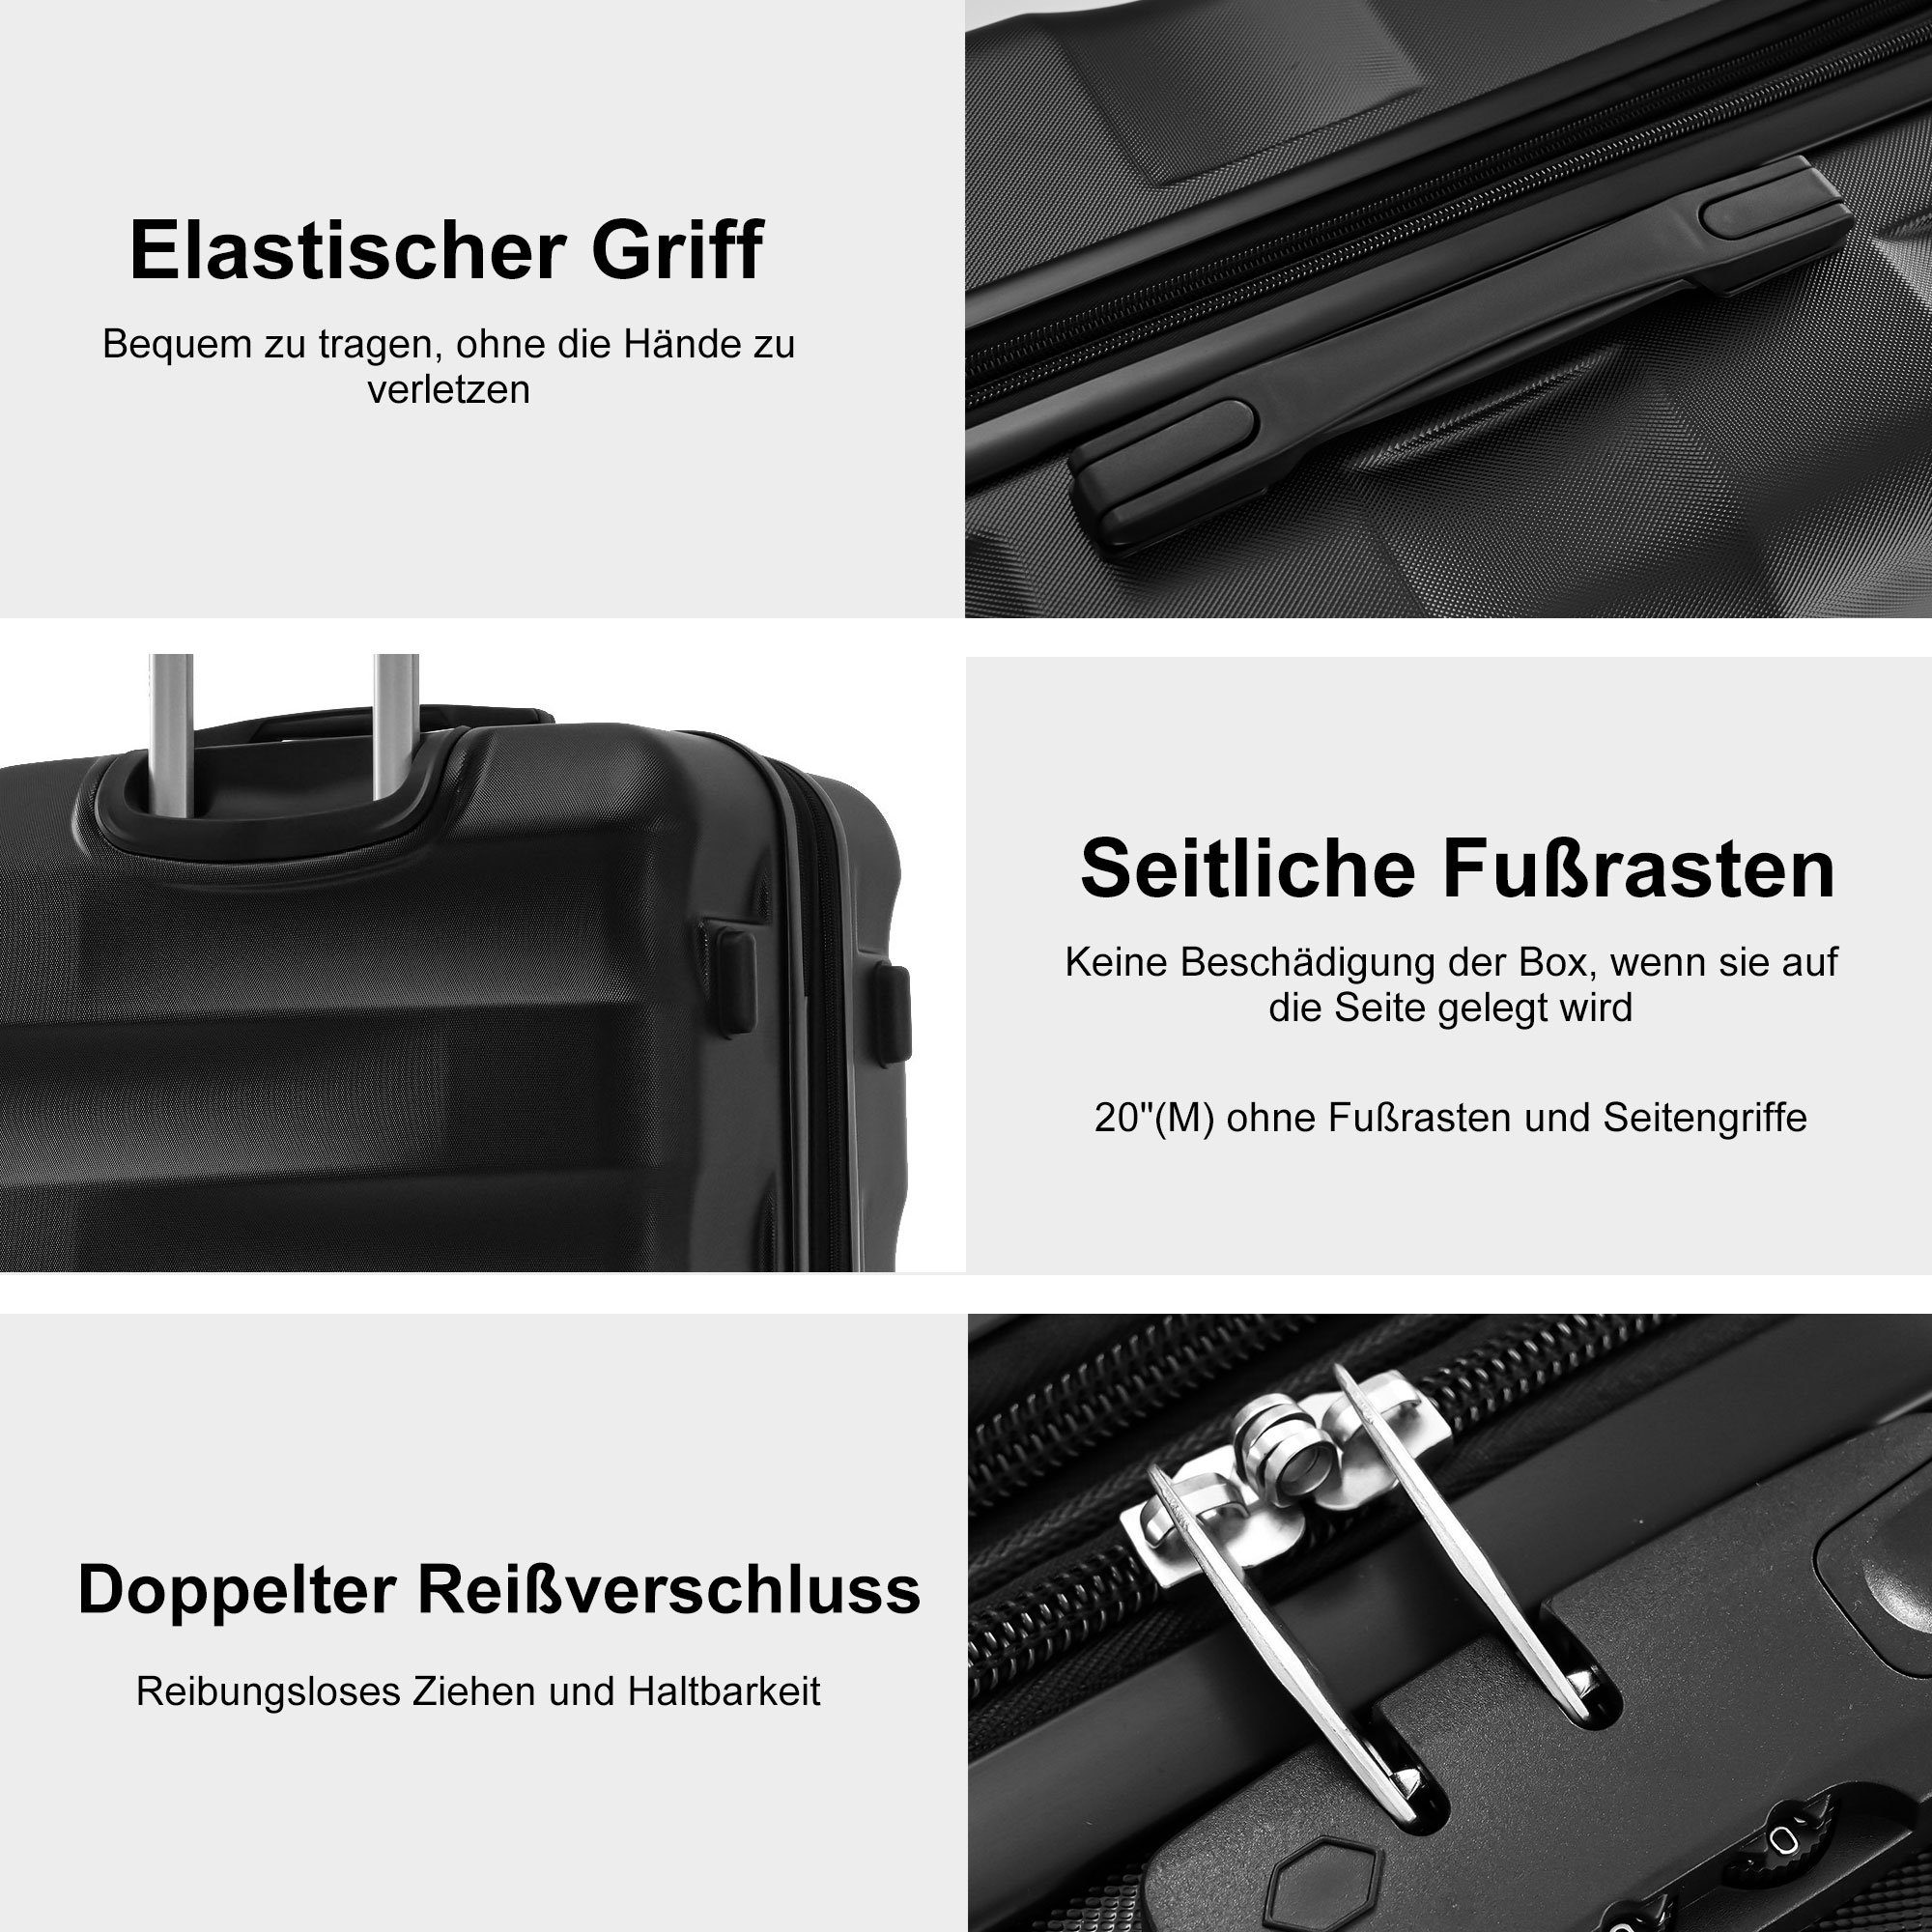 Schwarz Hartschalen-Trolley, Reisekoffer, 4 Koffer Rollen, TSA-Schloss, mit Flieks Handgepäck Erweiterung